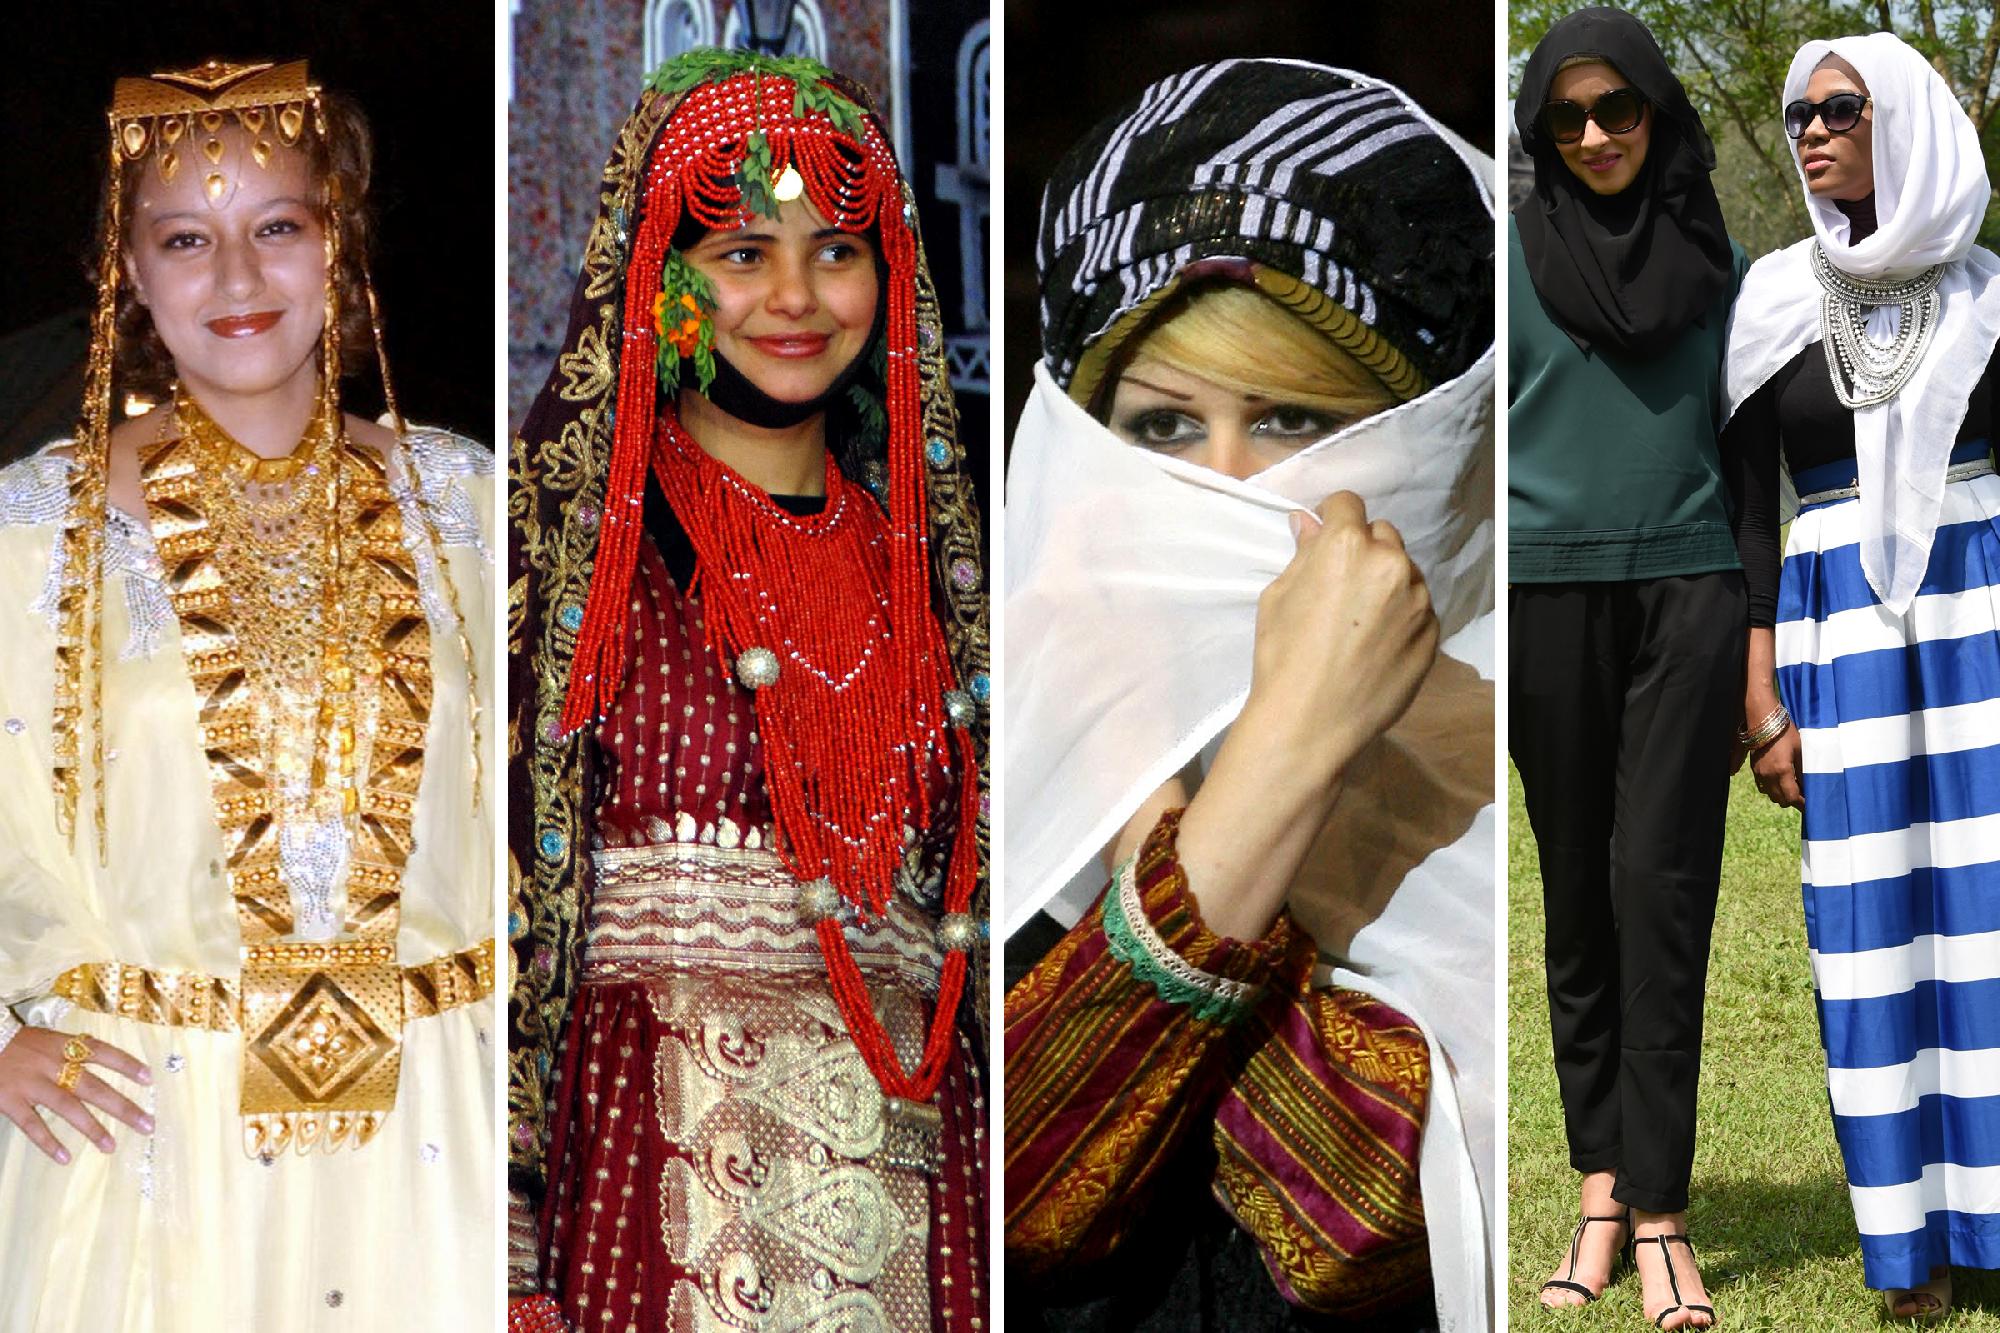 Balról jobbra: 1. A katari ruhatár egy ékes darabja 2. Pompás jemeni népviselet 3. Szőke fürtök a szíriai viselet alatt 4. A modern divat az iszlámot is elérte Europress/AFP